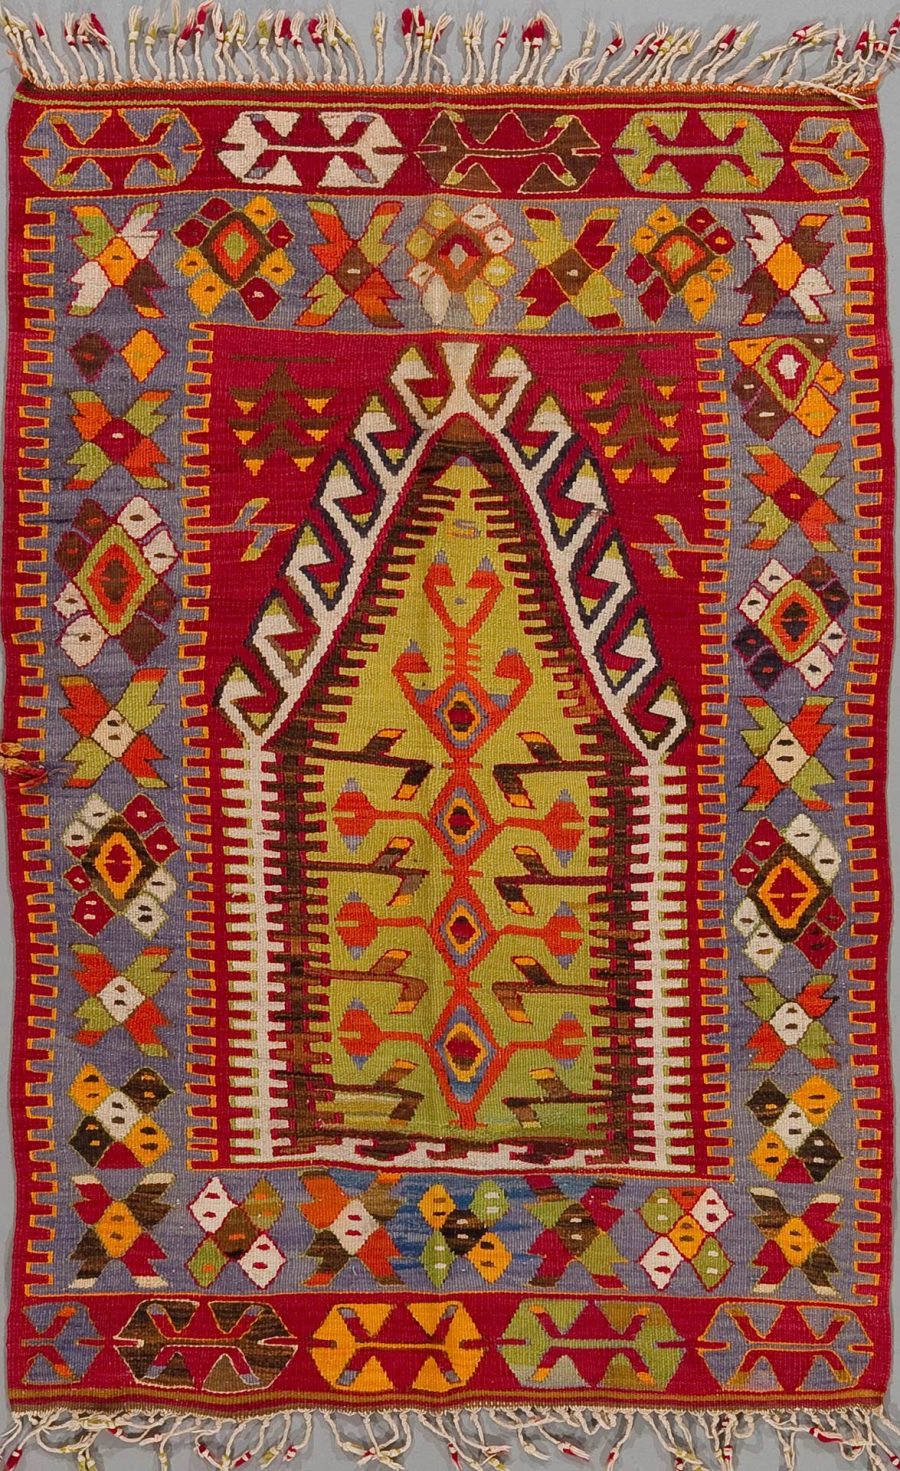 Traditioneller handgewebter Teppich mit komplexem Muster aus geometrischen Formen und Symmetrien in lebendigen Farben, darunter Rot, Blau, Gelb und Grün, mit ausgefransten Kanten an den Enden.